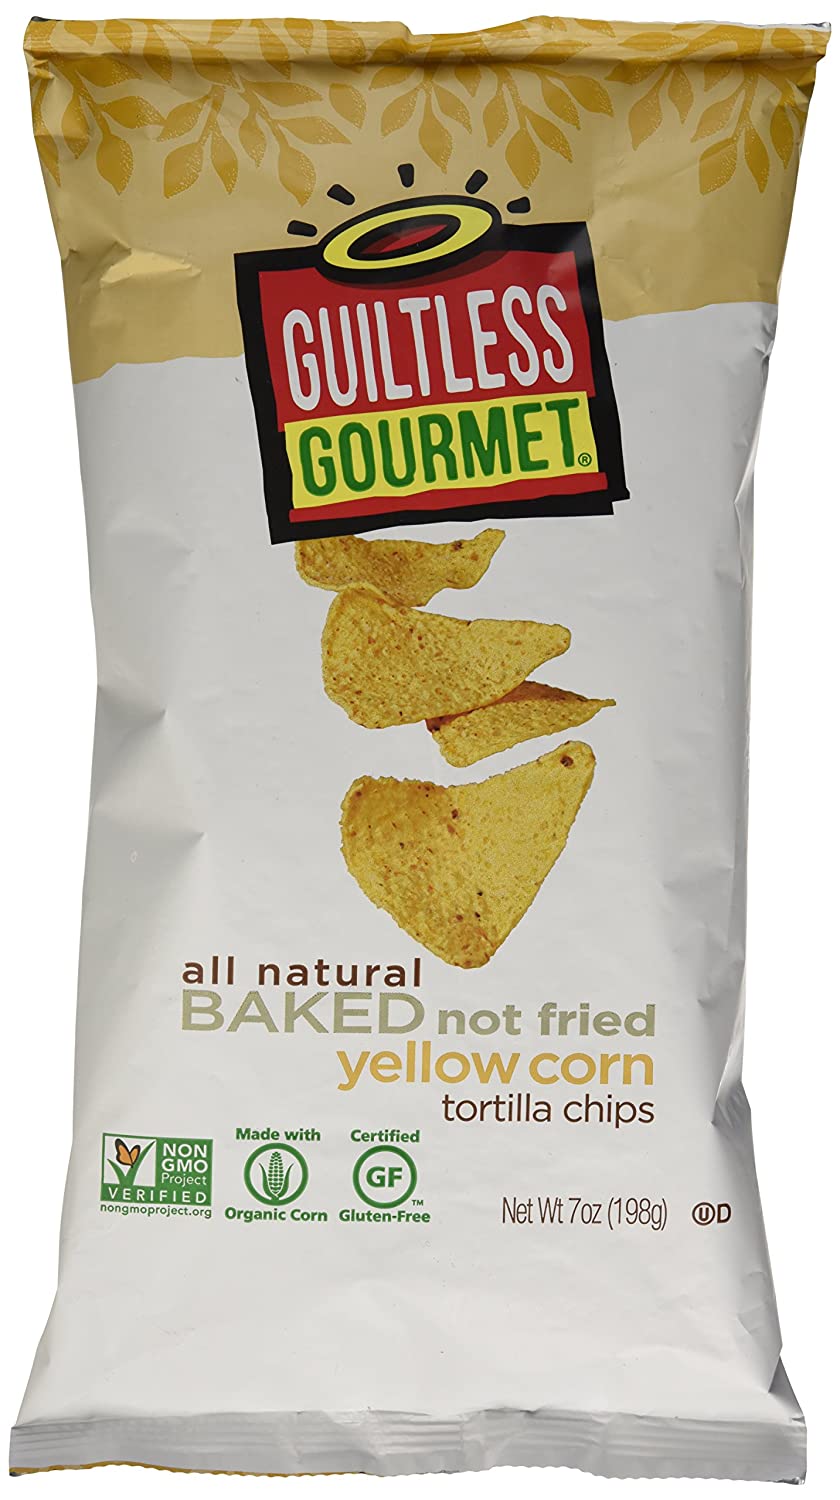 Guiltless Gourmet Yellow Corn Tortilla Chips